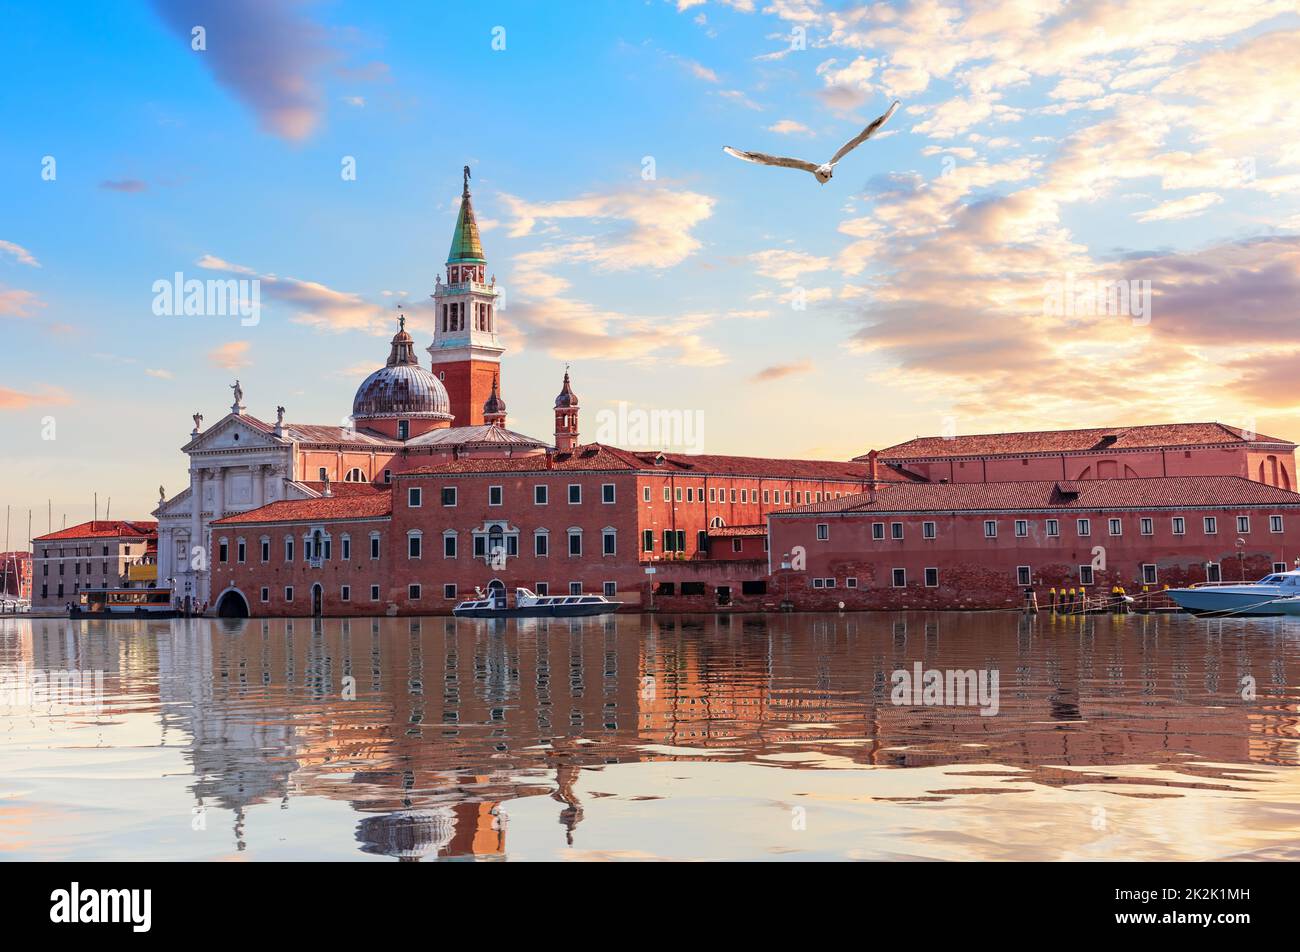 Main sights of Venice on the Adriatic coast, Italy Stock Photo